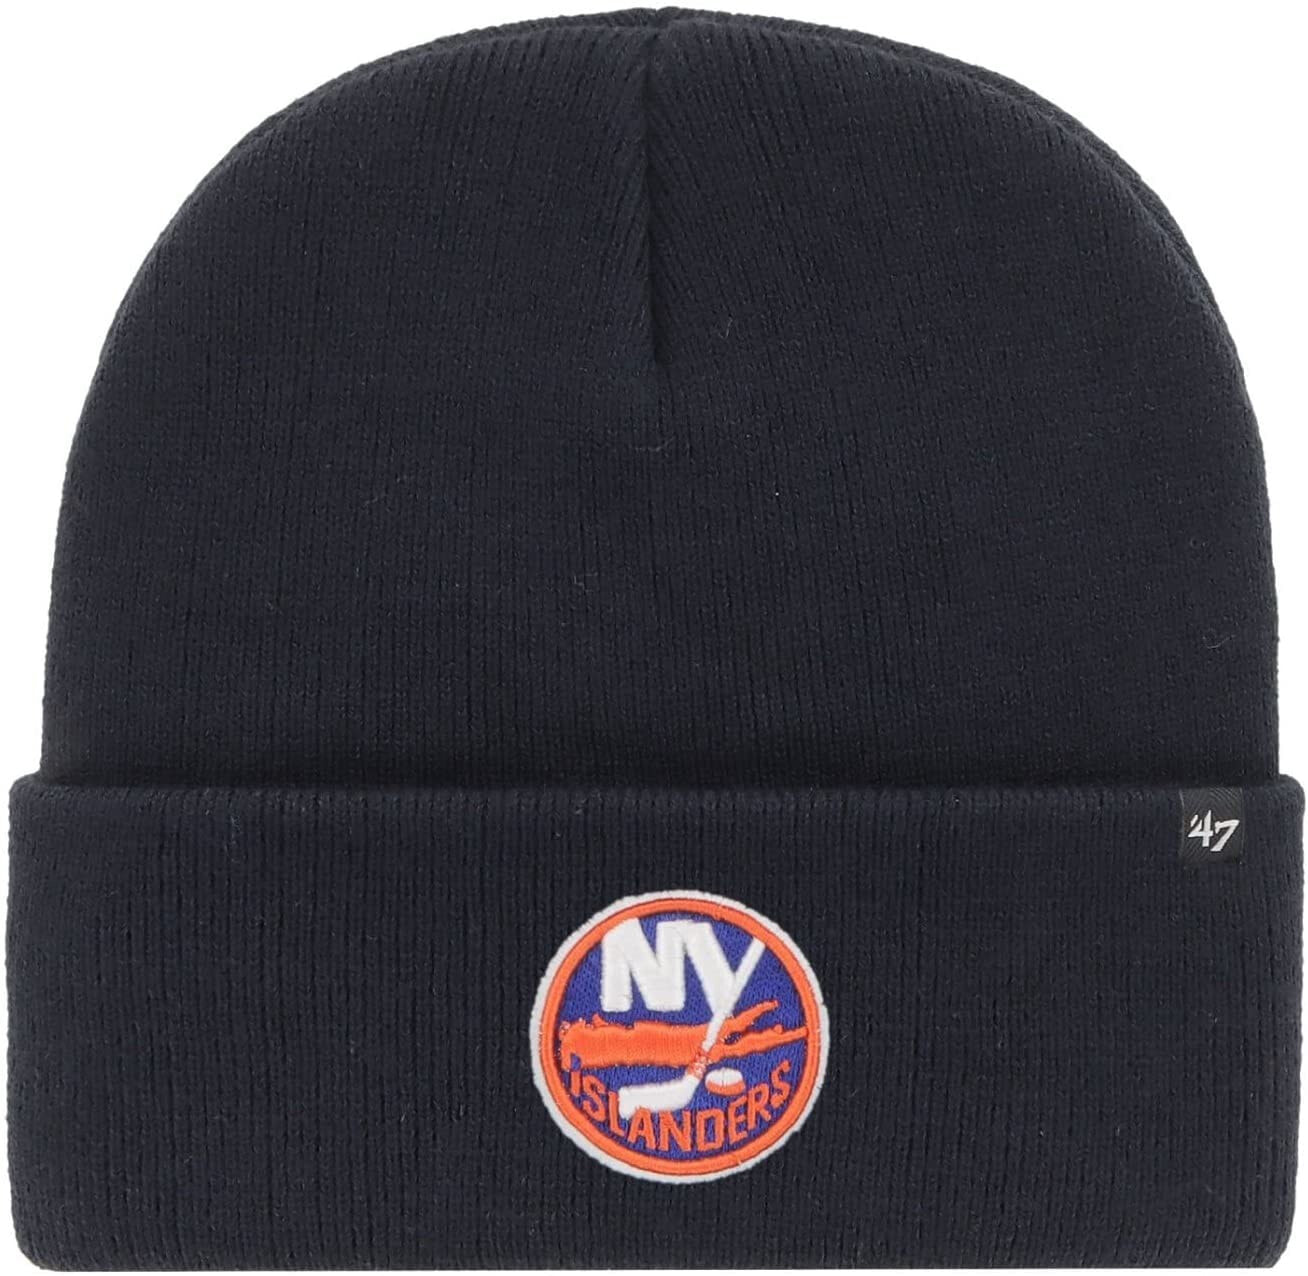 Мужская шапка черная трикотажная '47 Haymaker New York Islanders Winter Beanie Hat